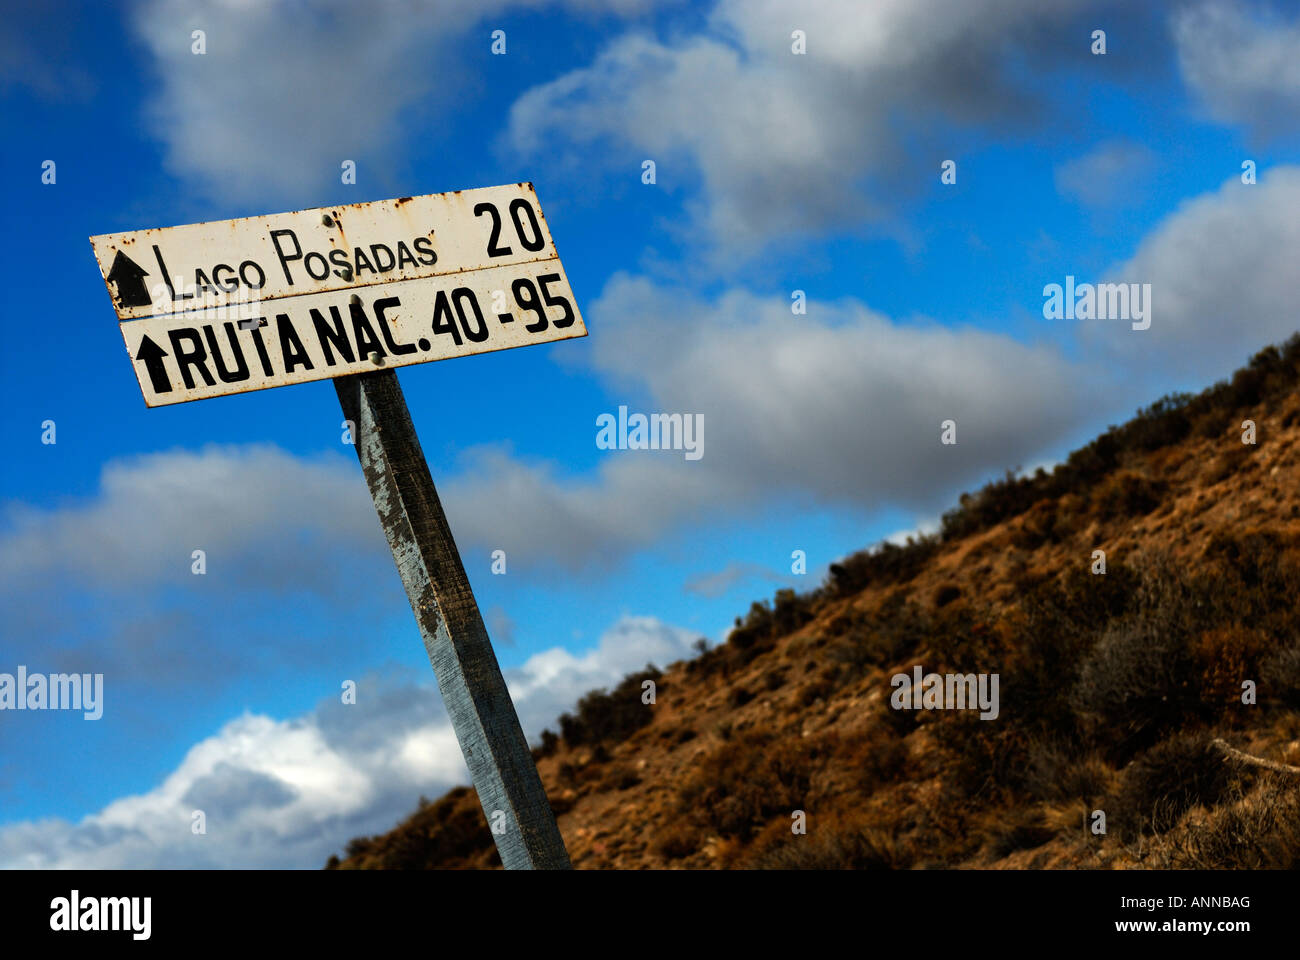 Signe de route en Patagonie, Lago Posadas, Province de Santa Cruz, Argentine, Amérique du Sud Banque D'Images